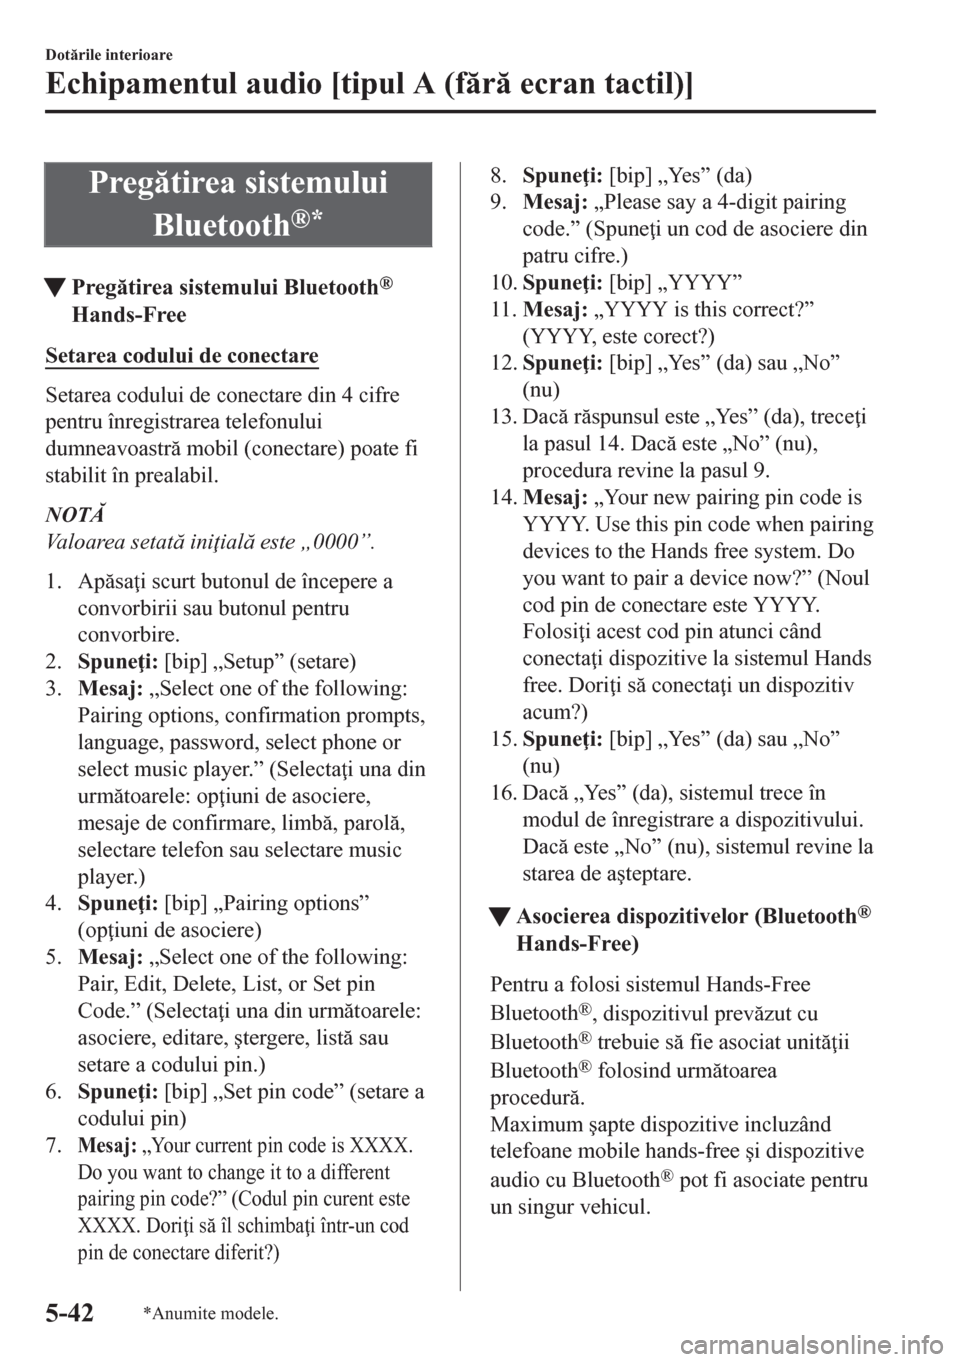 MAZDA MODEL CX-5 2018  Manualul de utilizare (in Romanian) Pregtirea sistemului
Bluetooth
®*
tPregtirea sistemului Bluetooth®
Hands-Free
Setarea codului de conectare
Setarea codului de conectare din 4 cifre
pentru înregistrarea telefonului
dumneavoastr